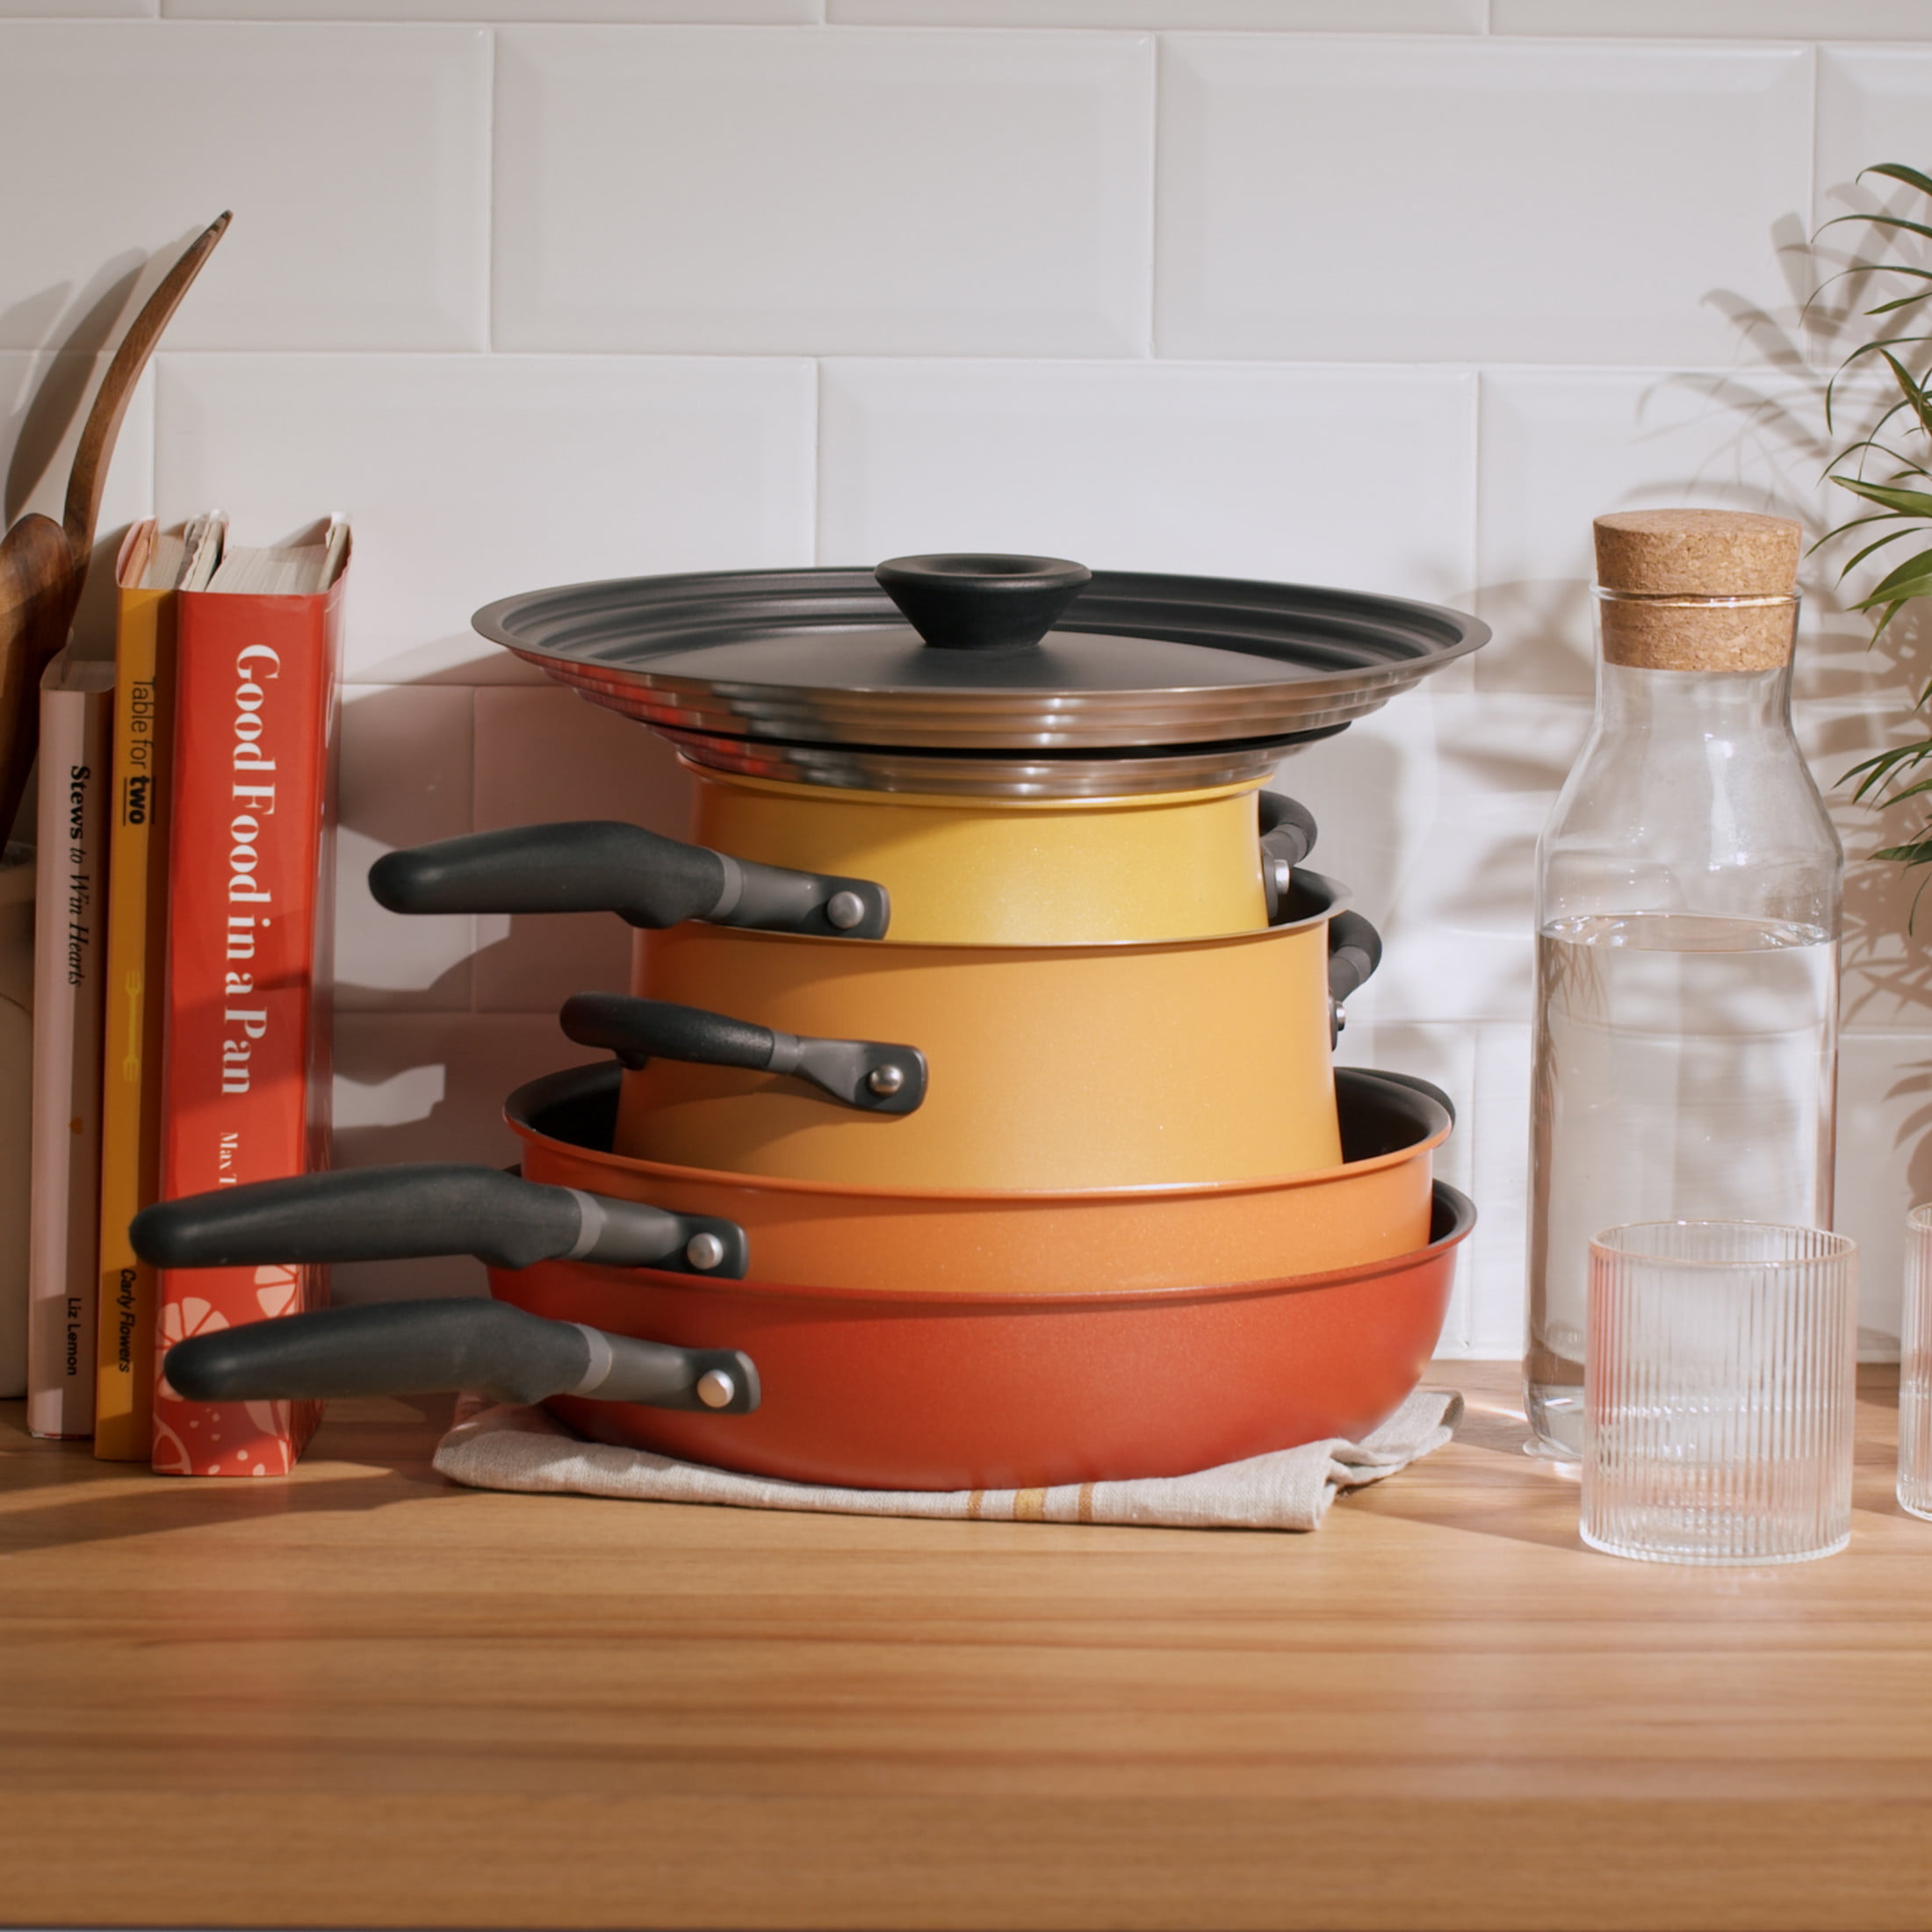 Meyer Bauhaus Series Nonstick Induction 3 Piece Cookware Set